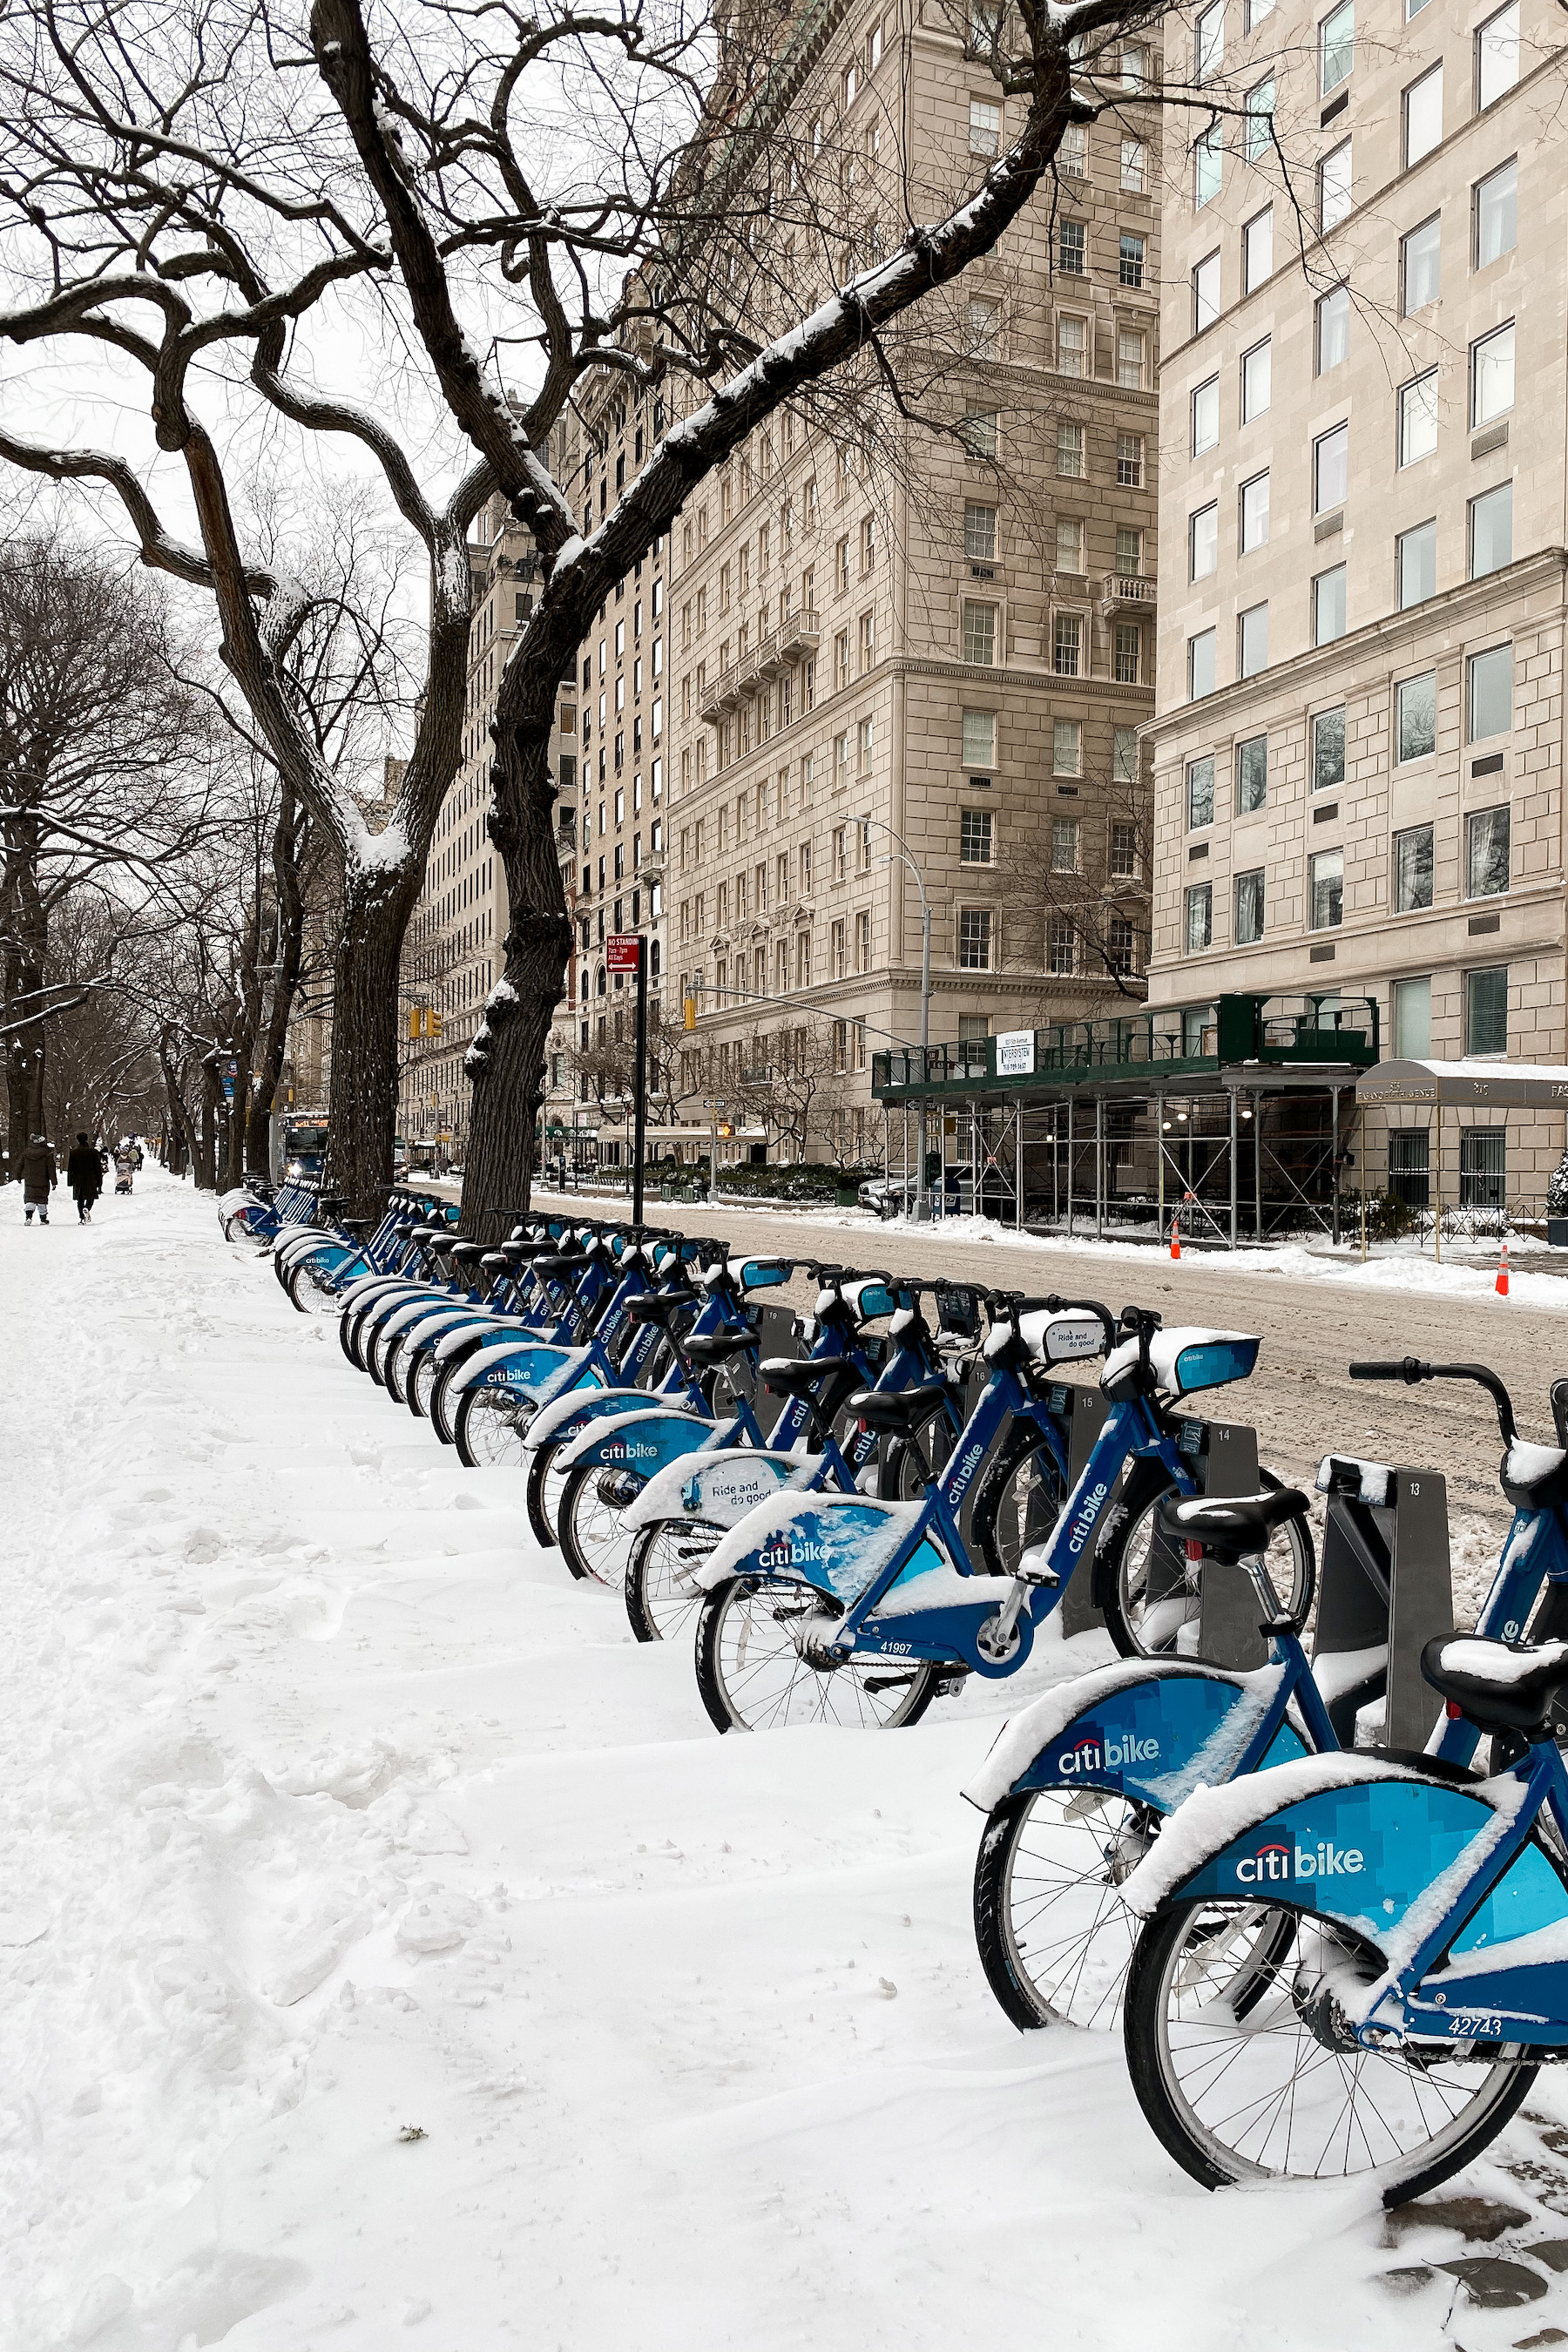 Citi Bike docks snowed in | A Snow Day in New York City